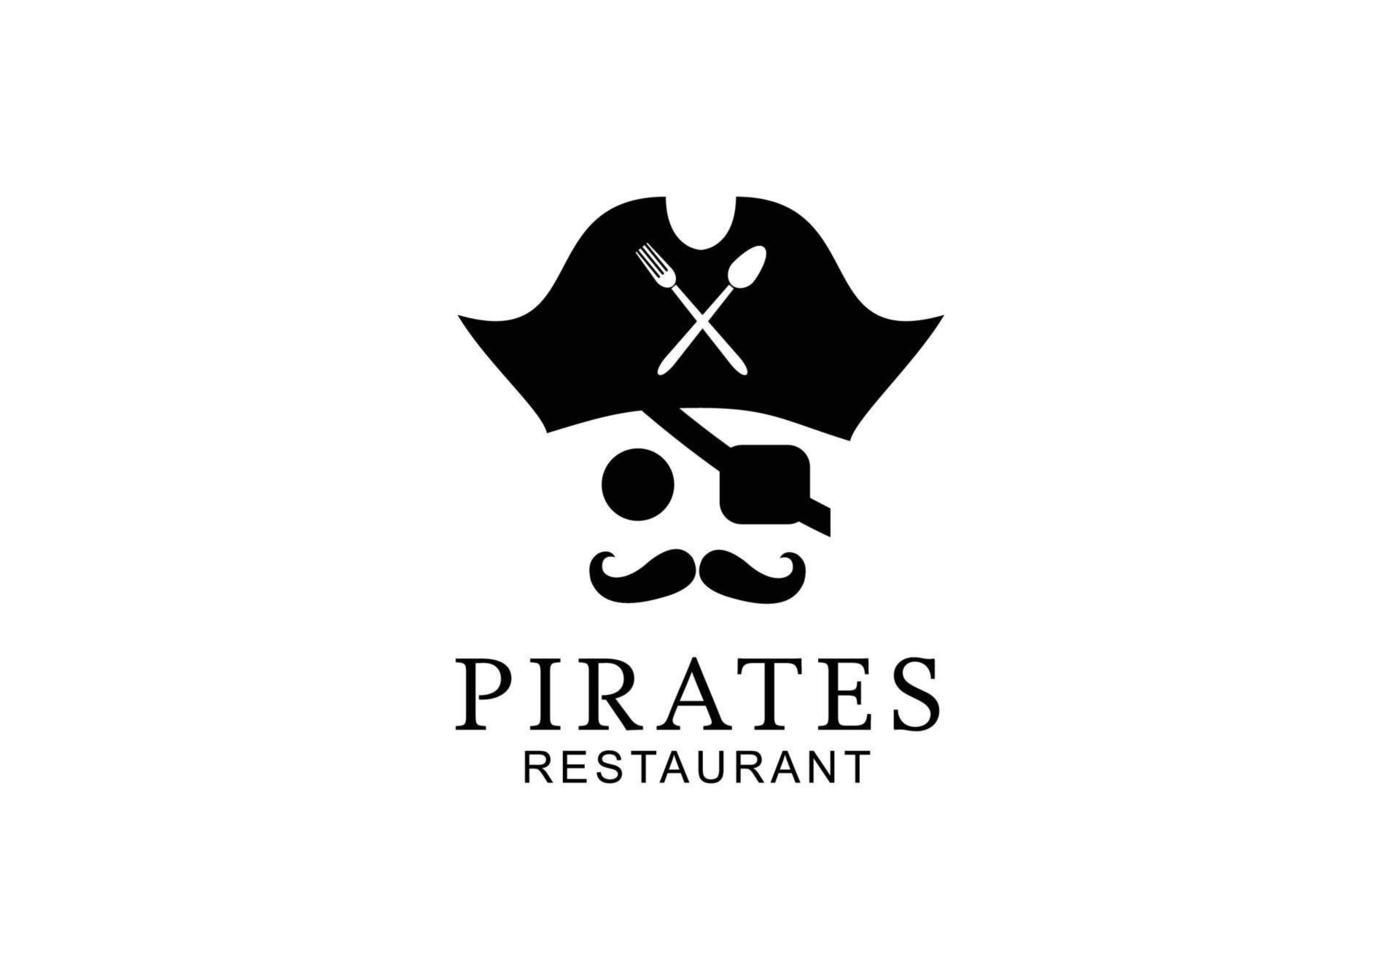 chapéu de piratas com colher e garfo para restaurante no design do logotipo do iate de cruzeiro de navio vetor